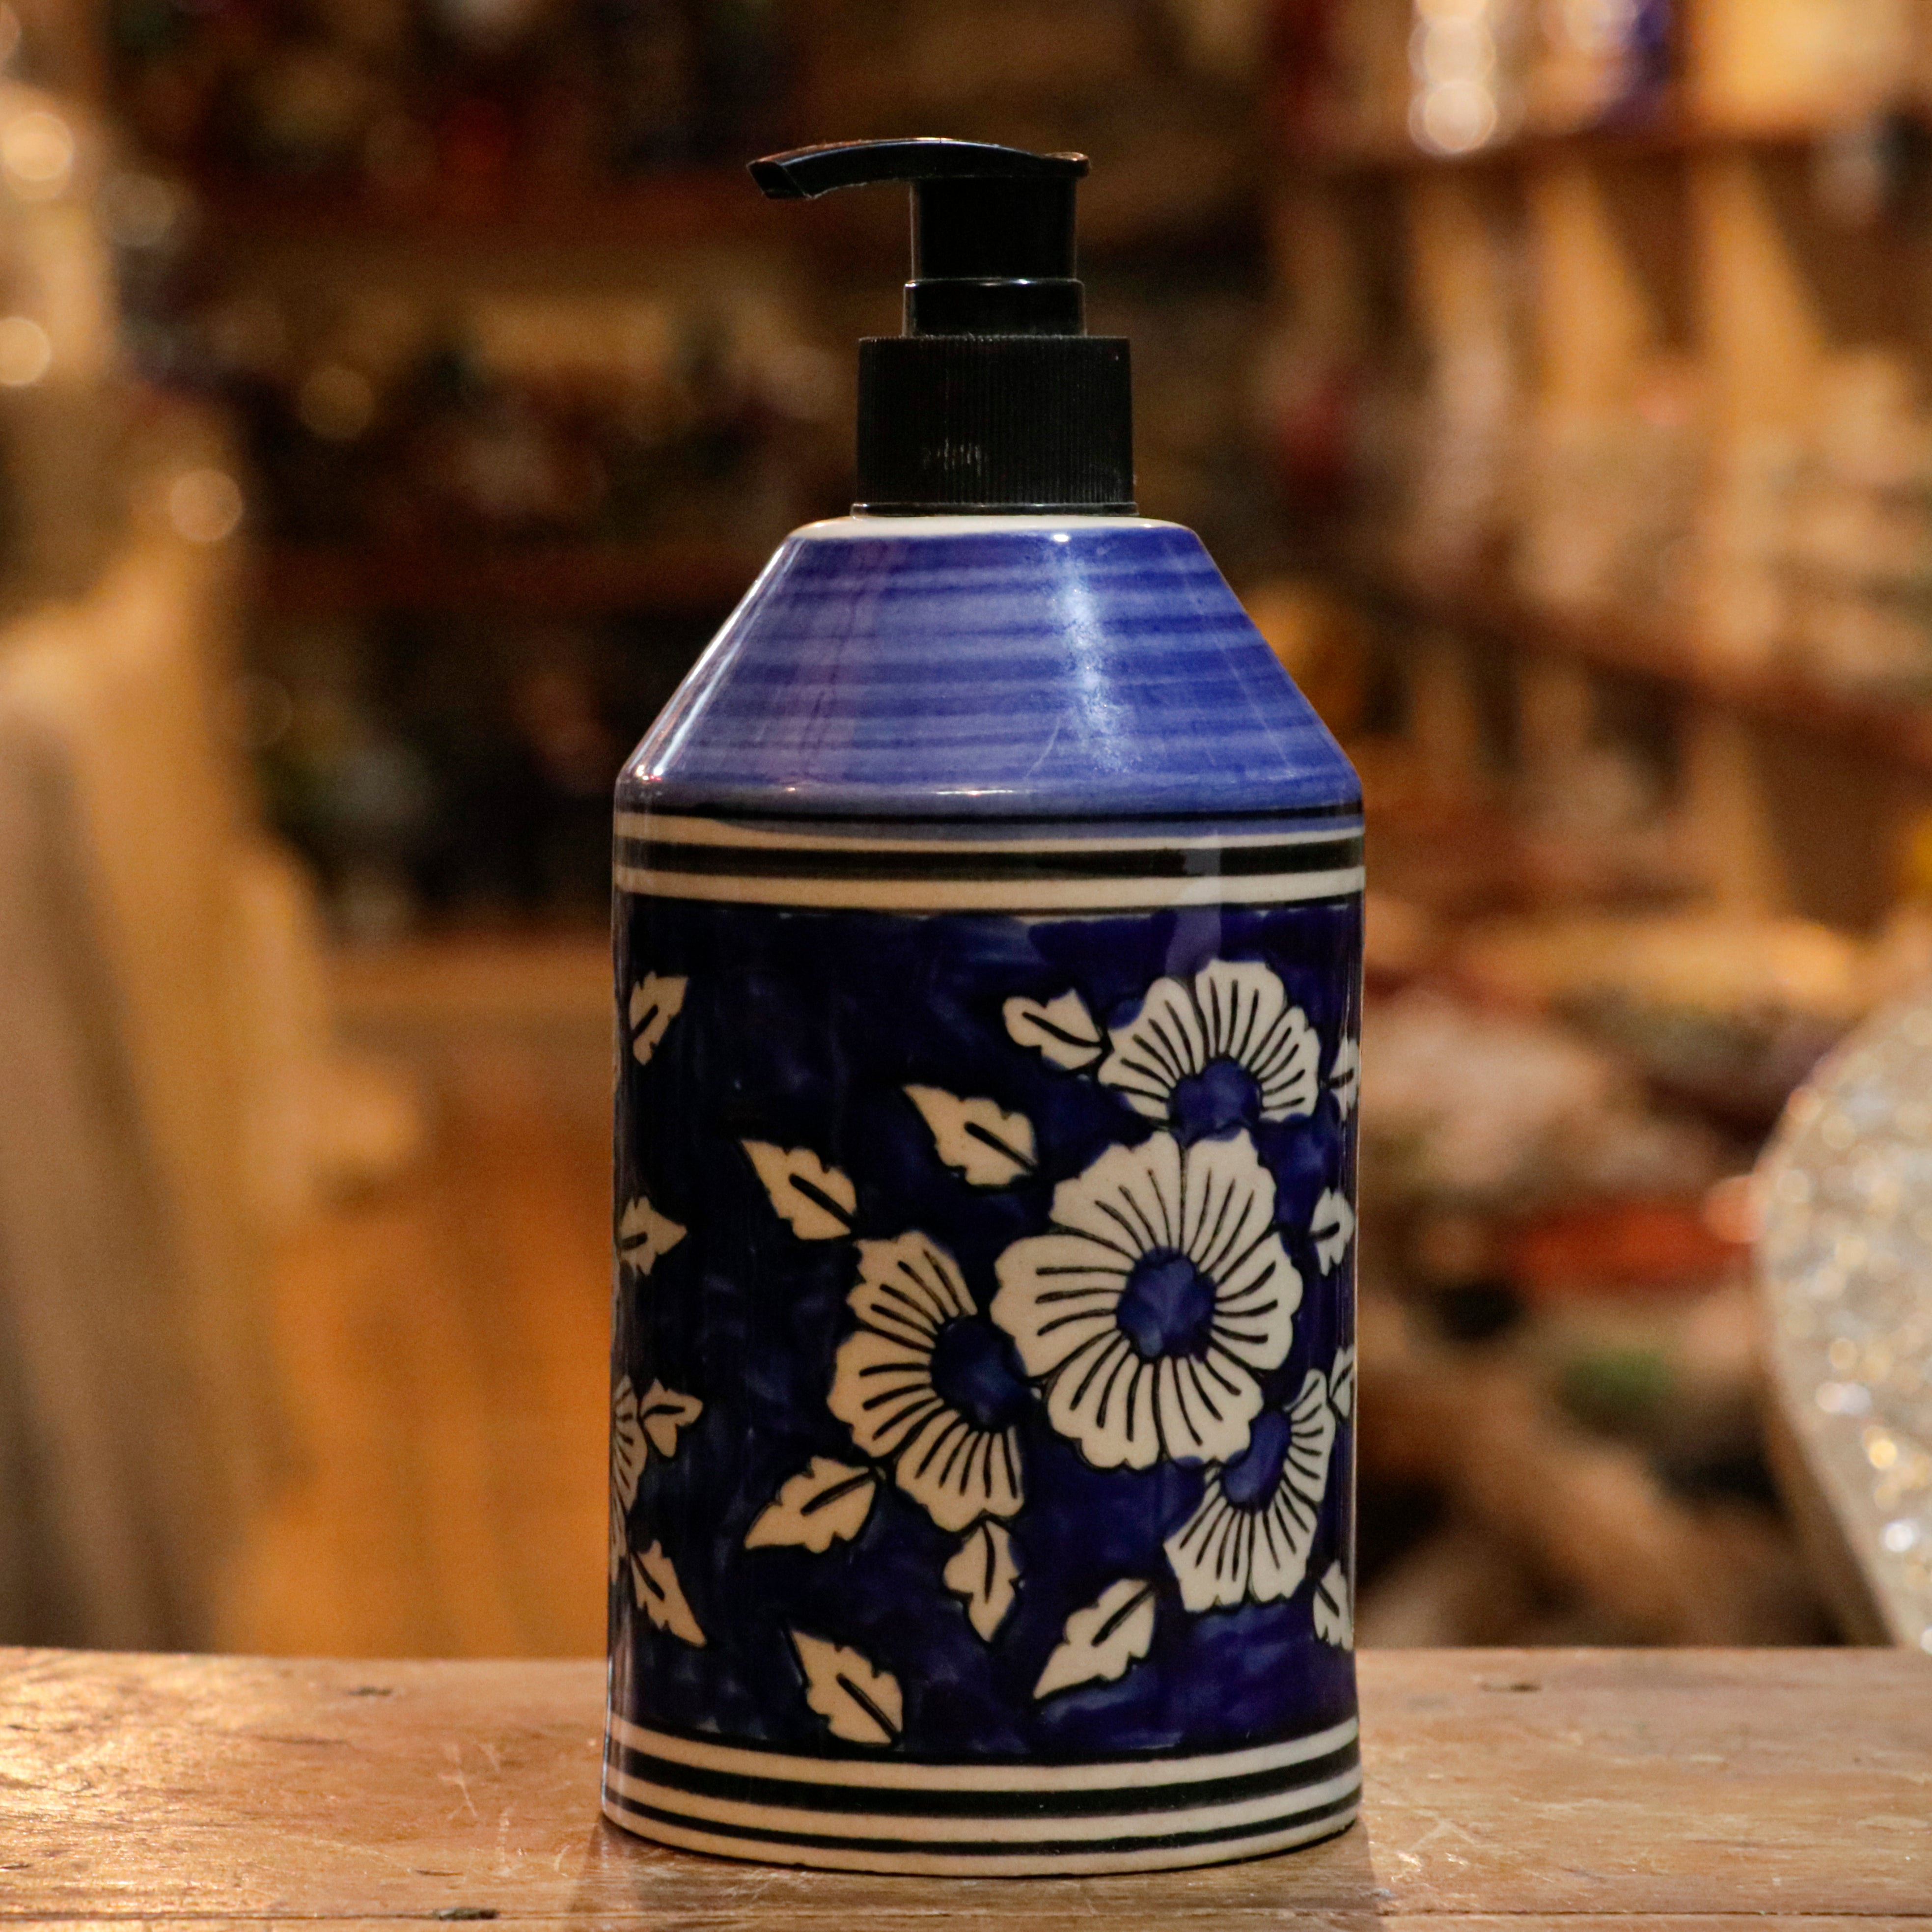 Antique Turbon Flower Hand-Painted Hand Wash Liquid Ceramic Bottle Hand Wash Bottle